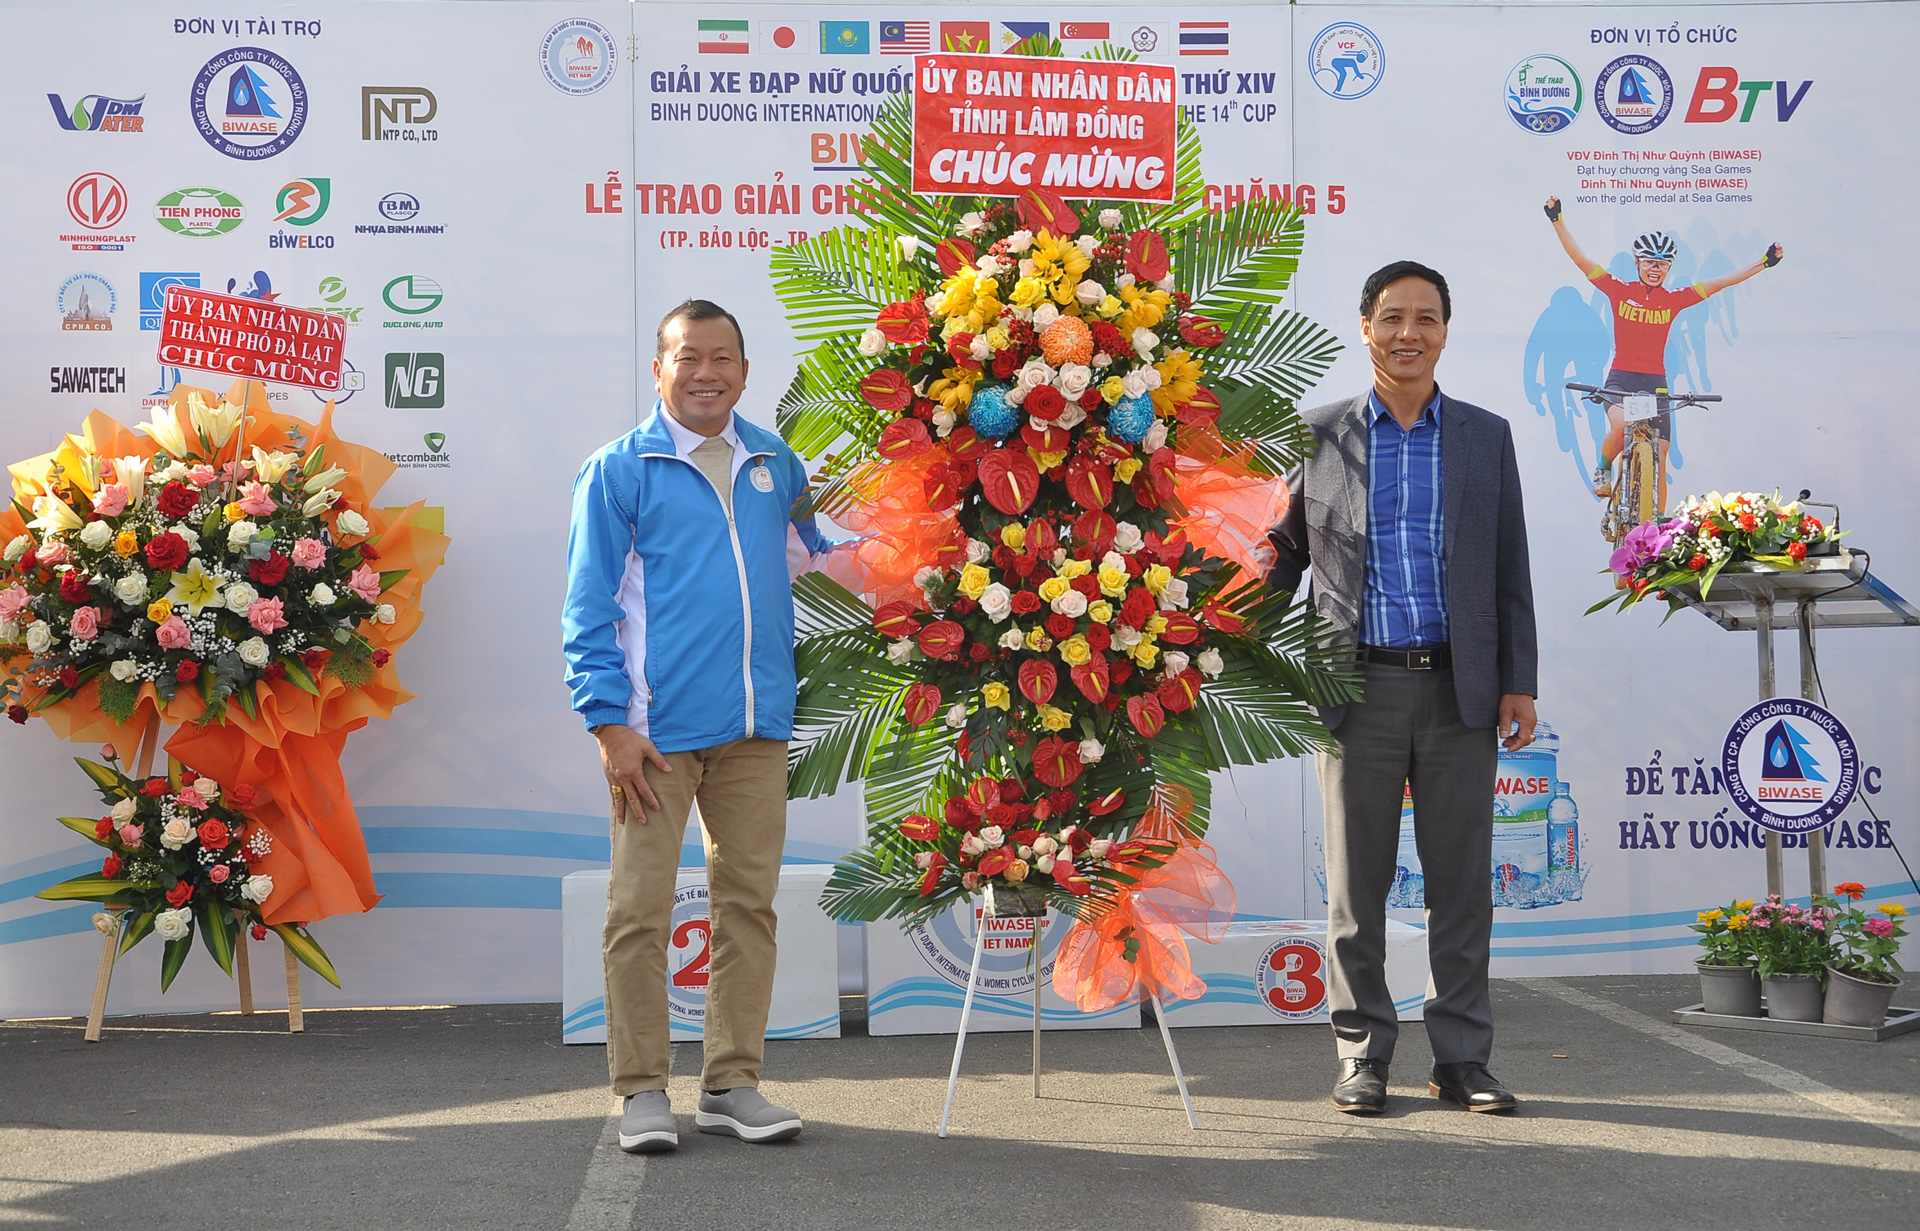 Ông Nguyễn Tiến Hải, Phó Giám đốc Sở Văn hóa - Thể thao và Du lịch Lâm Đồng thay mặt lãnh đạo tỉnh Lâm Đồng tặng hoa cho Ban tổ chức Giải đua xe đạp nữ quốc tế Bình Dương - 2024